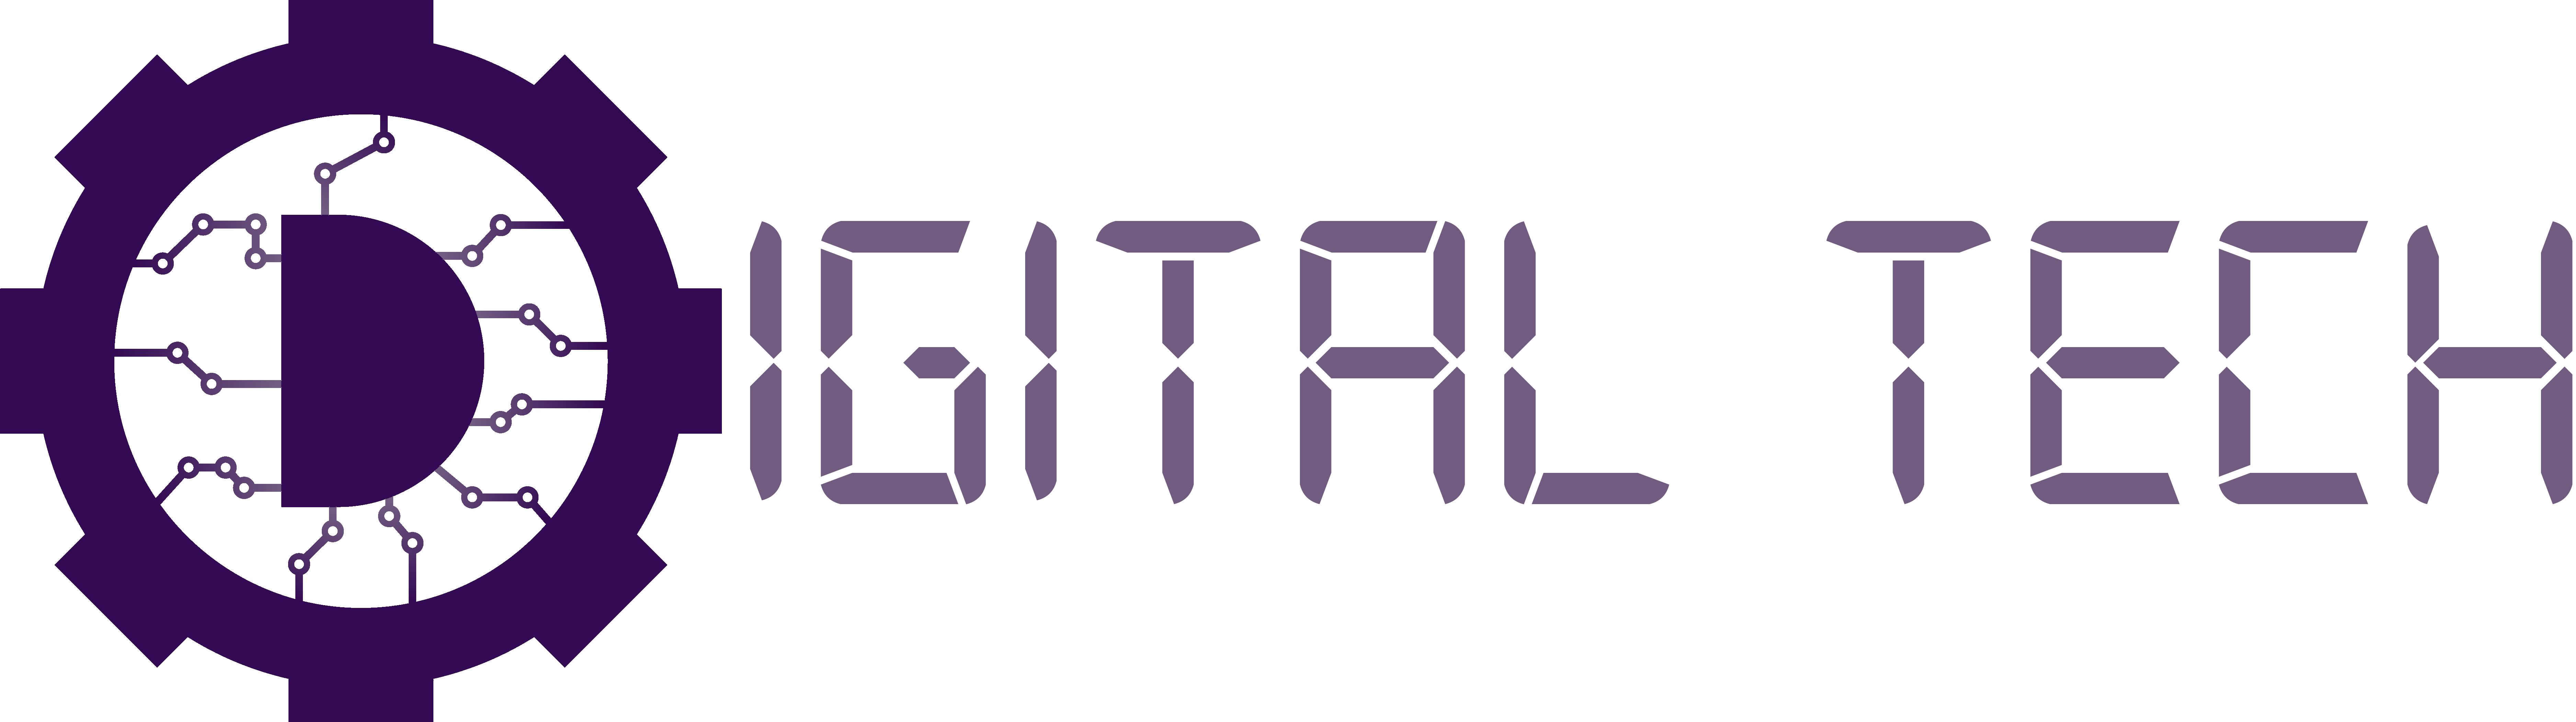 DigitalTech